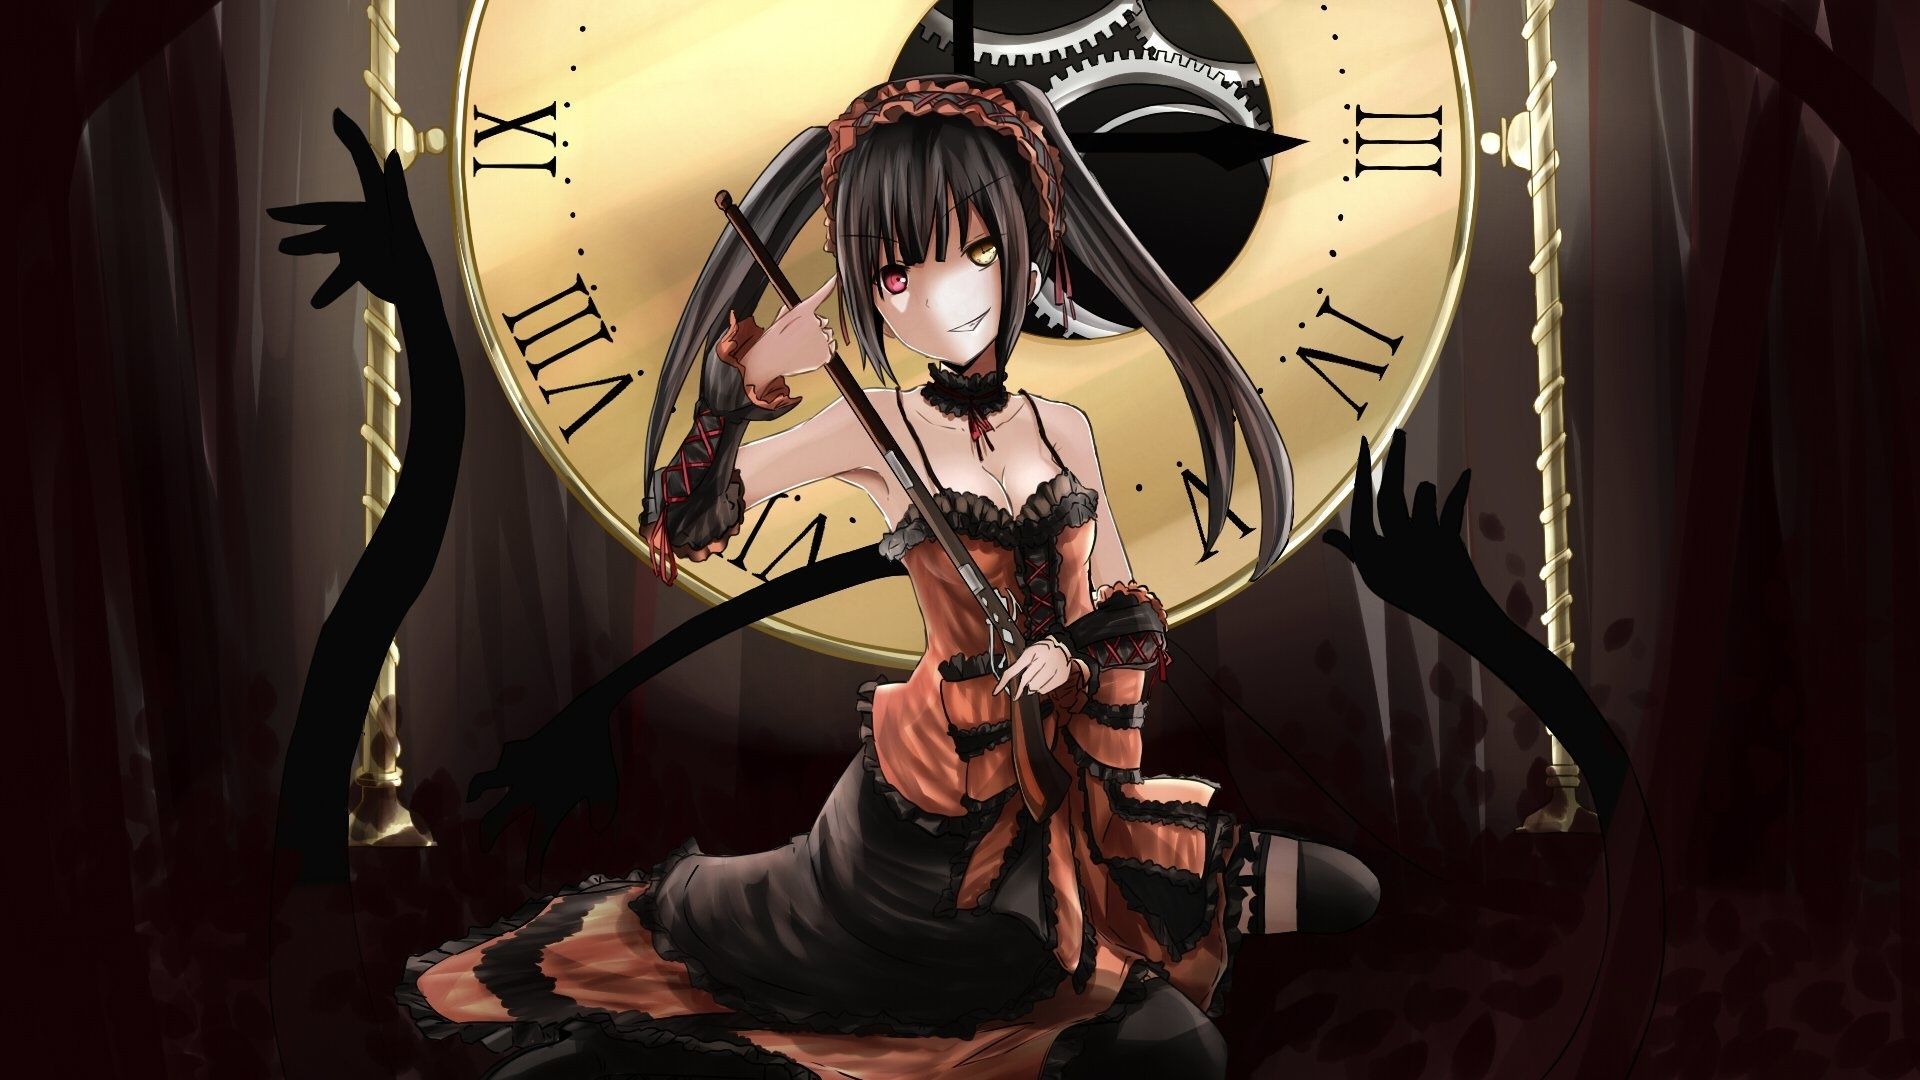 Kurumi tokisaki, dark, anime girl wallpaper, HD image, picture, background, 2844b8